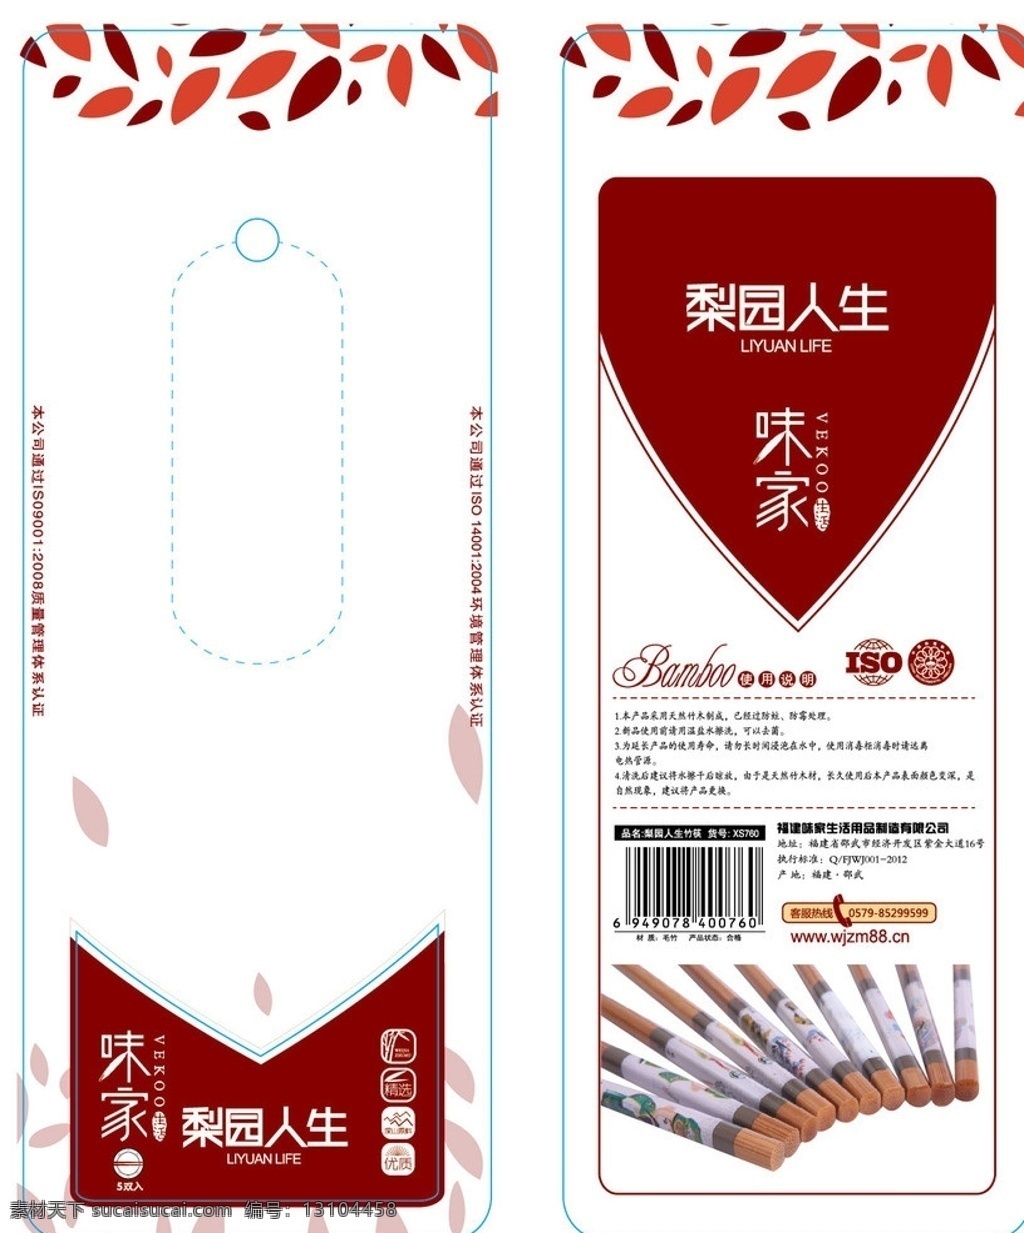 高档 筷子 包装 纸卡 精致纸卡 筷子纸卡 卡片 精美 餐具 包装盒 叶子 复古 包装设计 矢量